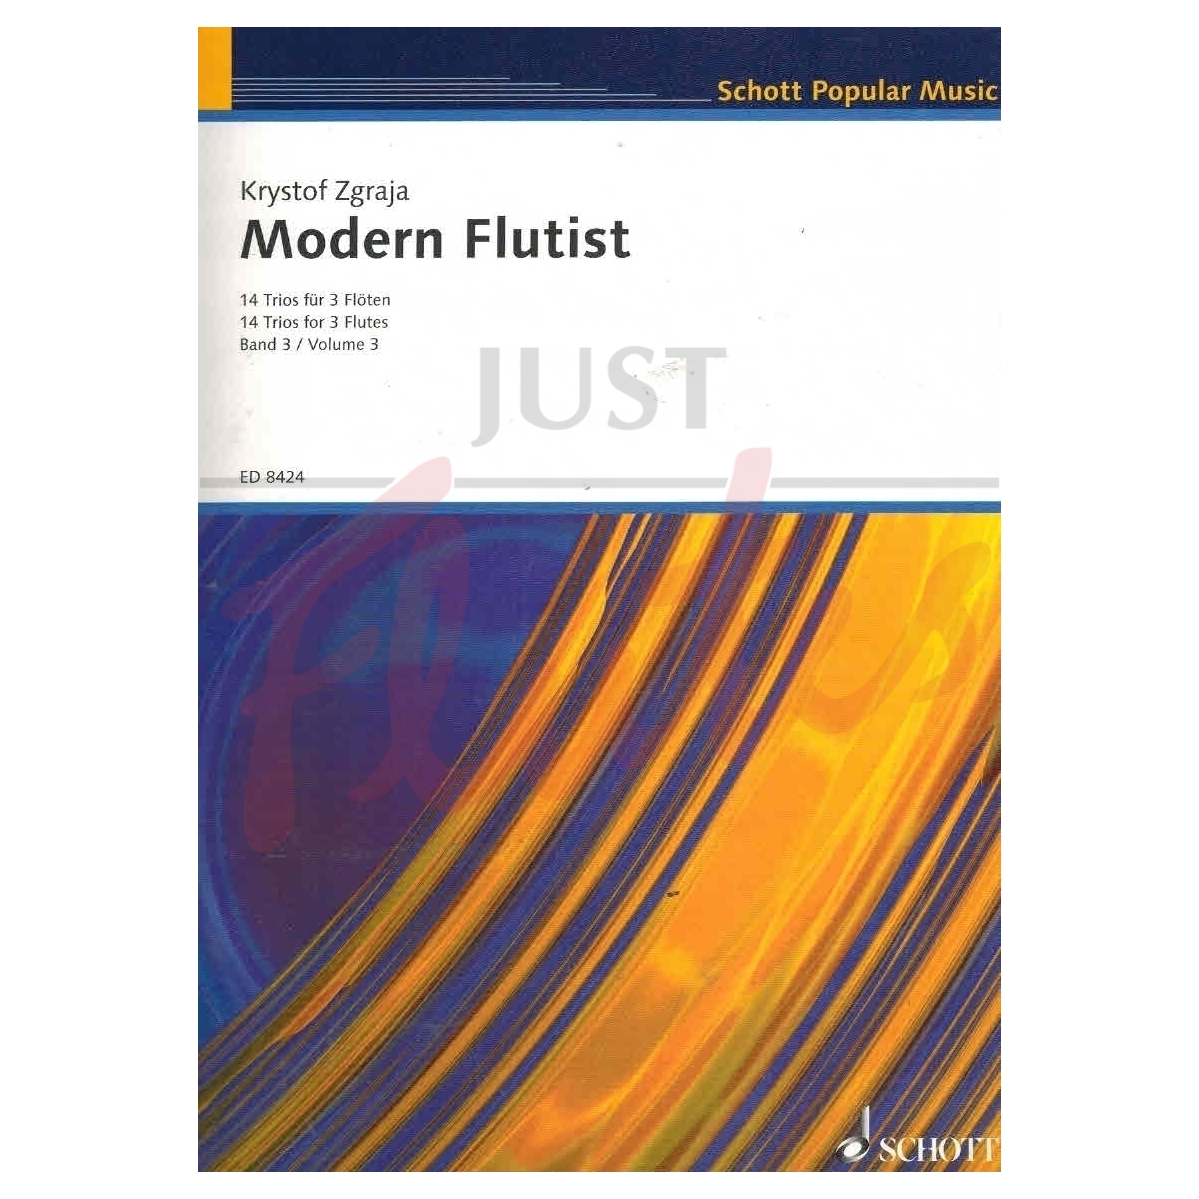 Modern Flutist Three: 14 Trios